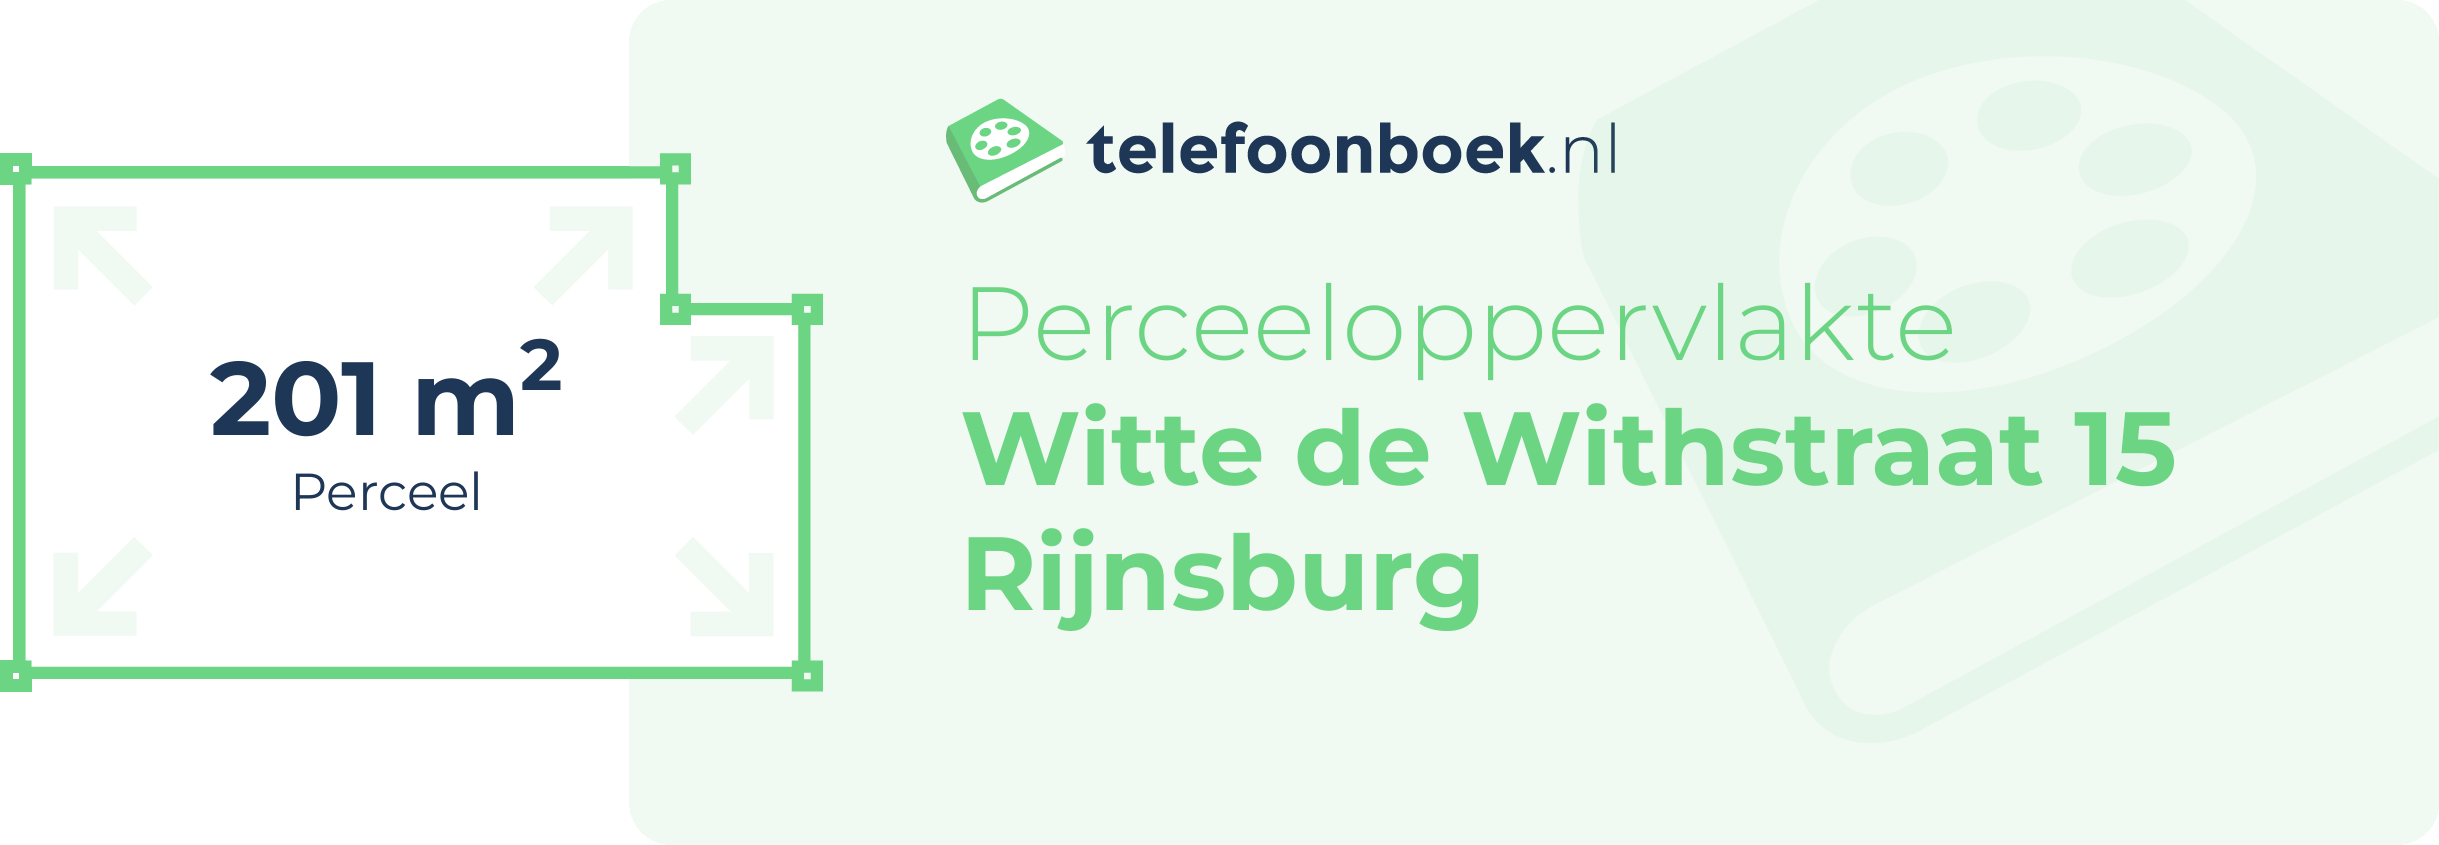 Perceeloppervlakte Witte De Withstraat 15 Rijnsburg